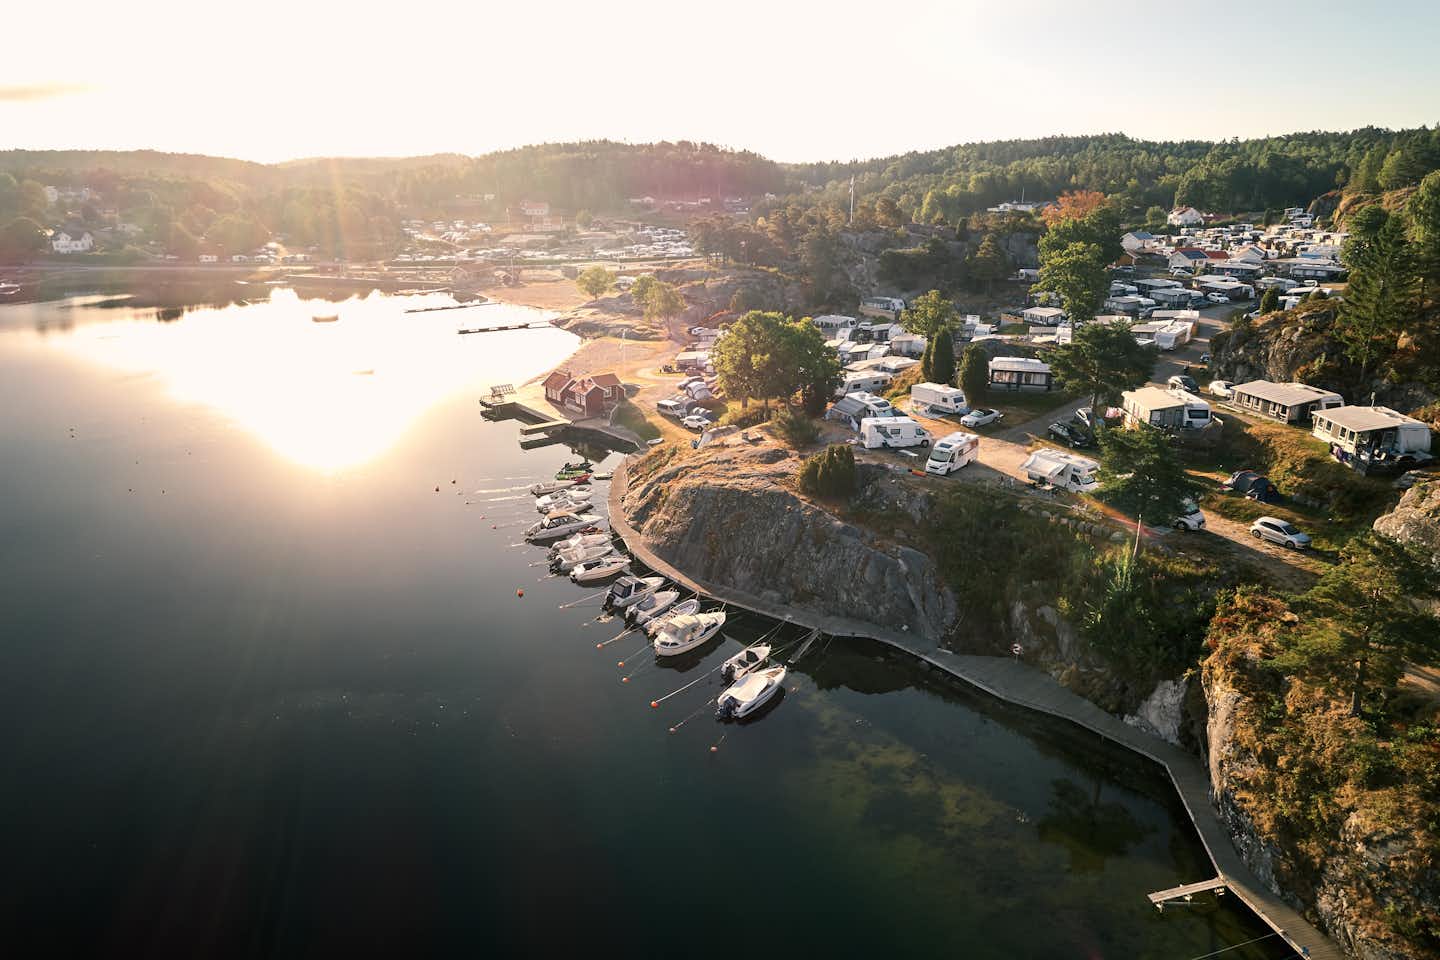 Camping Lagunen Strömstad - Blick auf den Campingplatz am Wasser mit Bootsanlegestelle